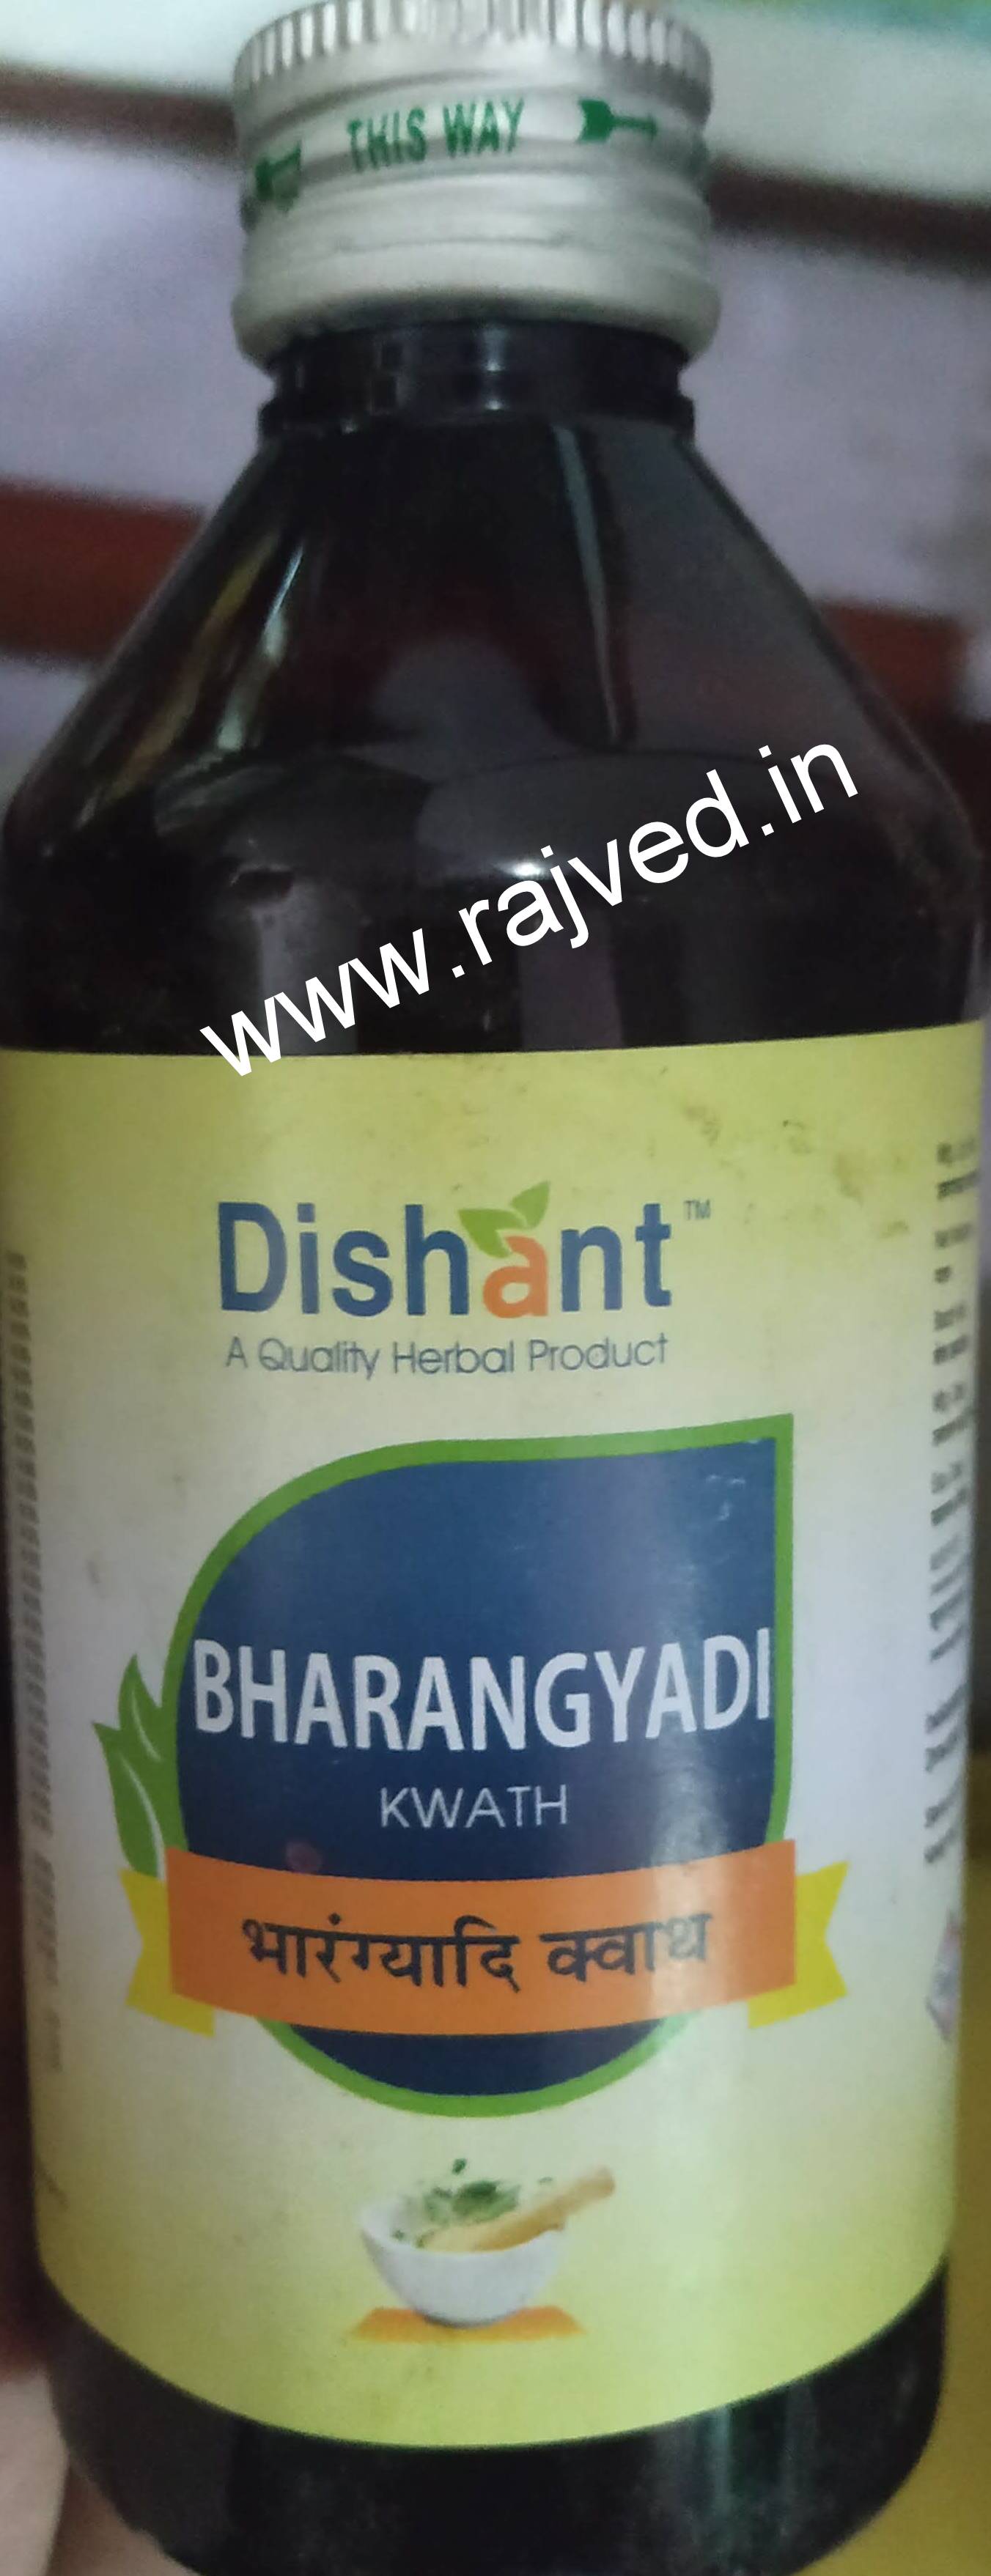 bharangyadi kwath 400ml dishant ayurvedic suppliers